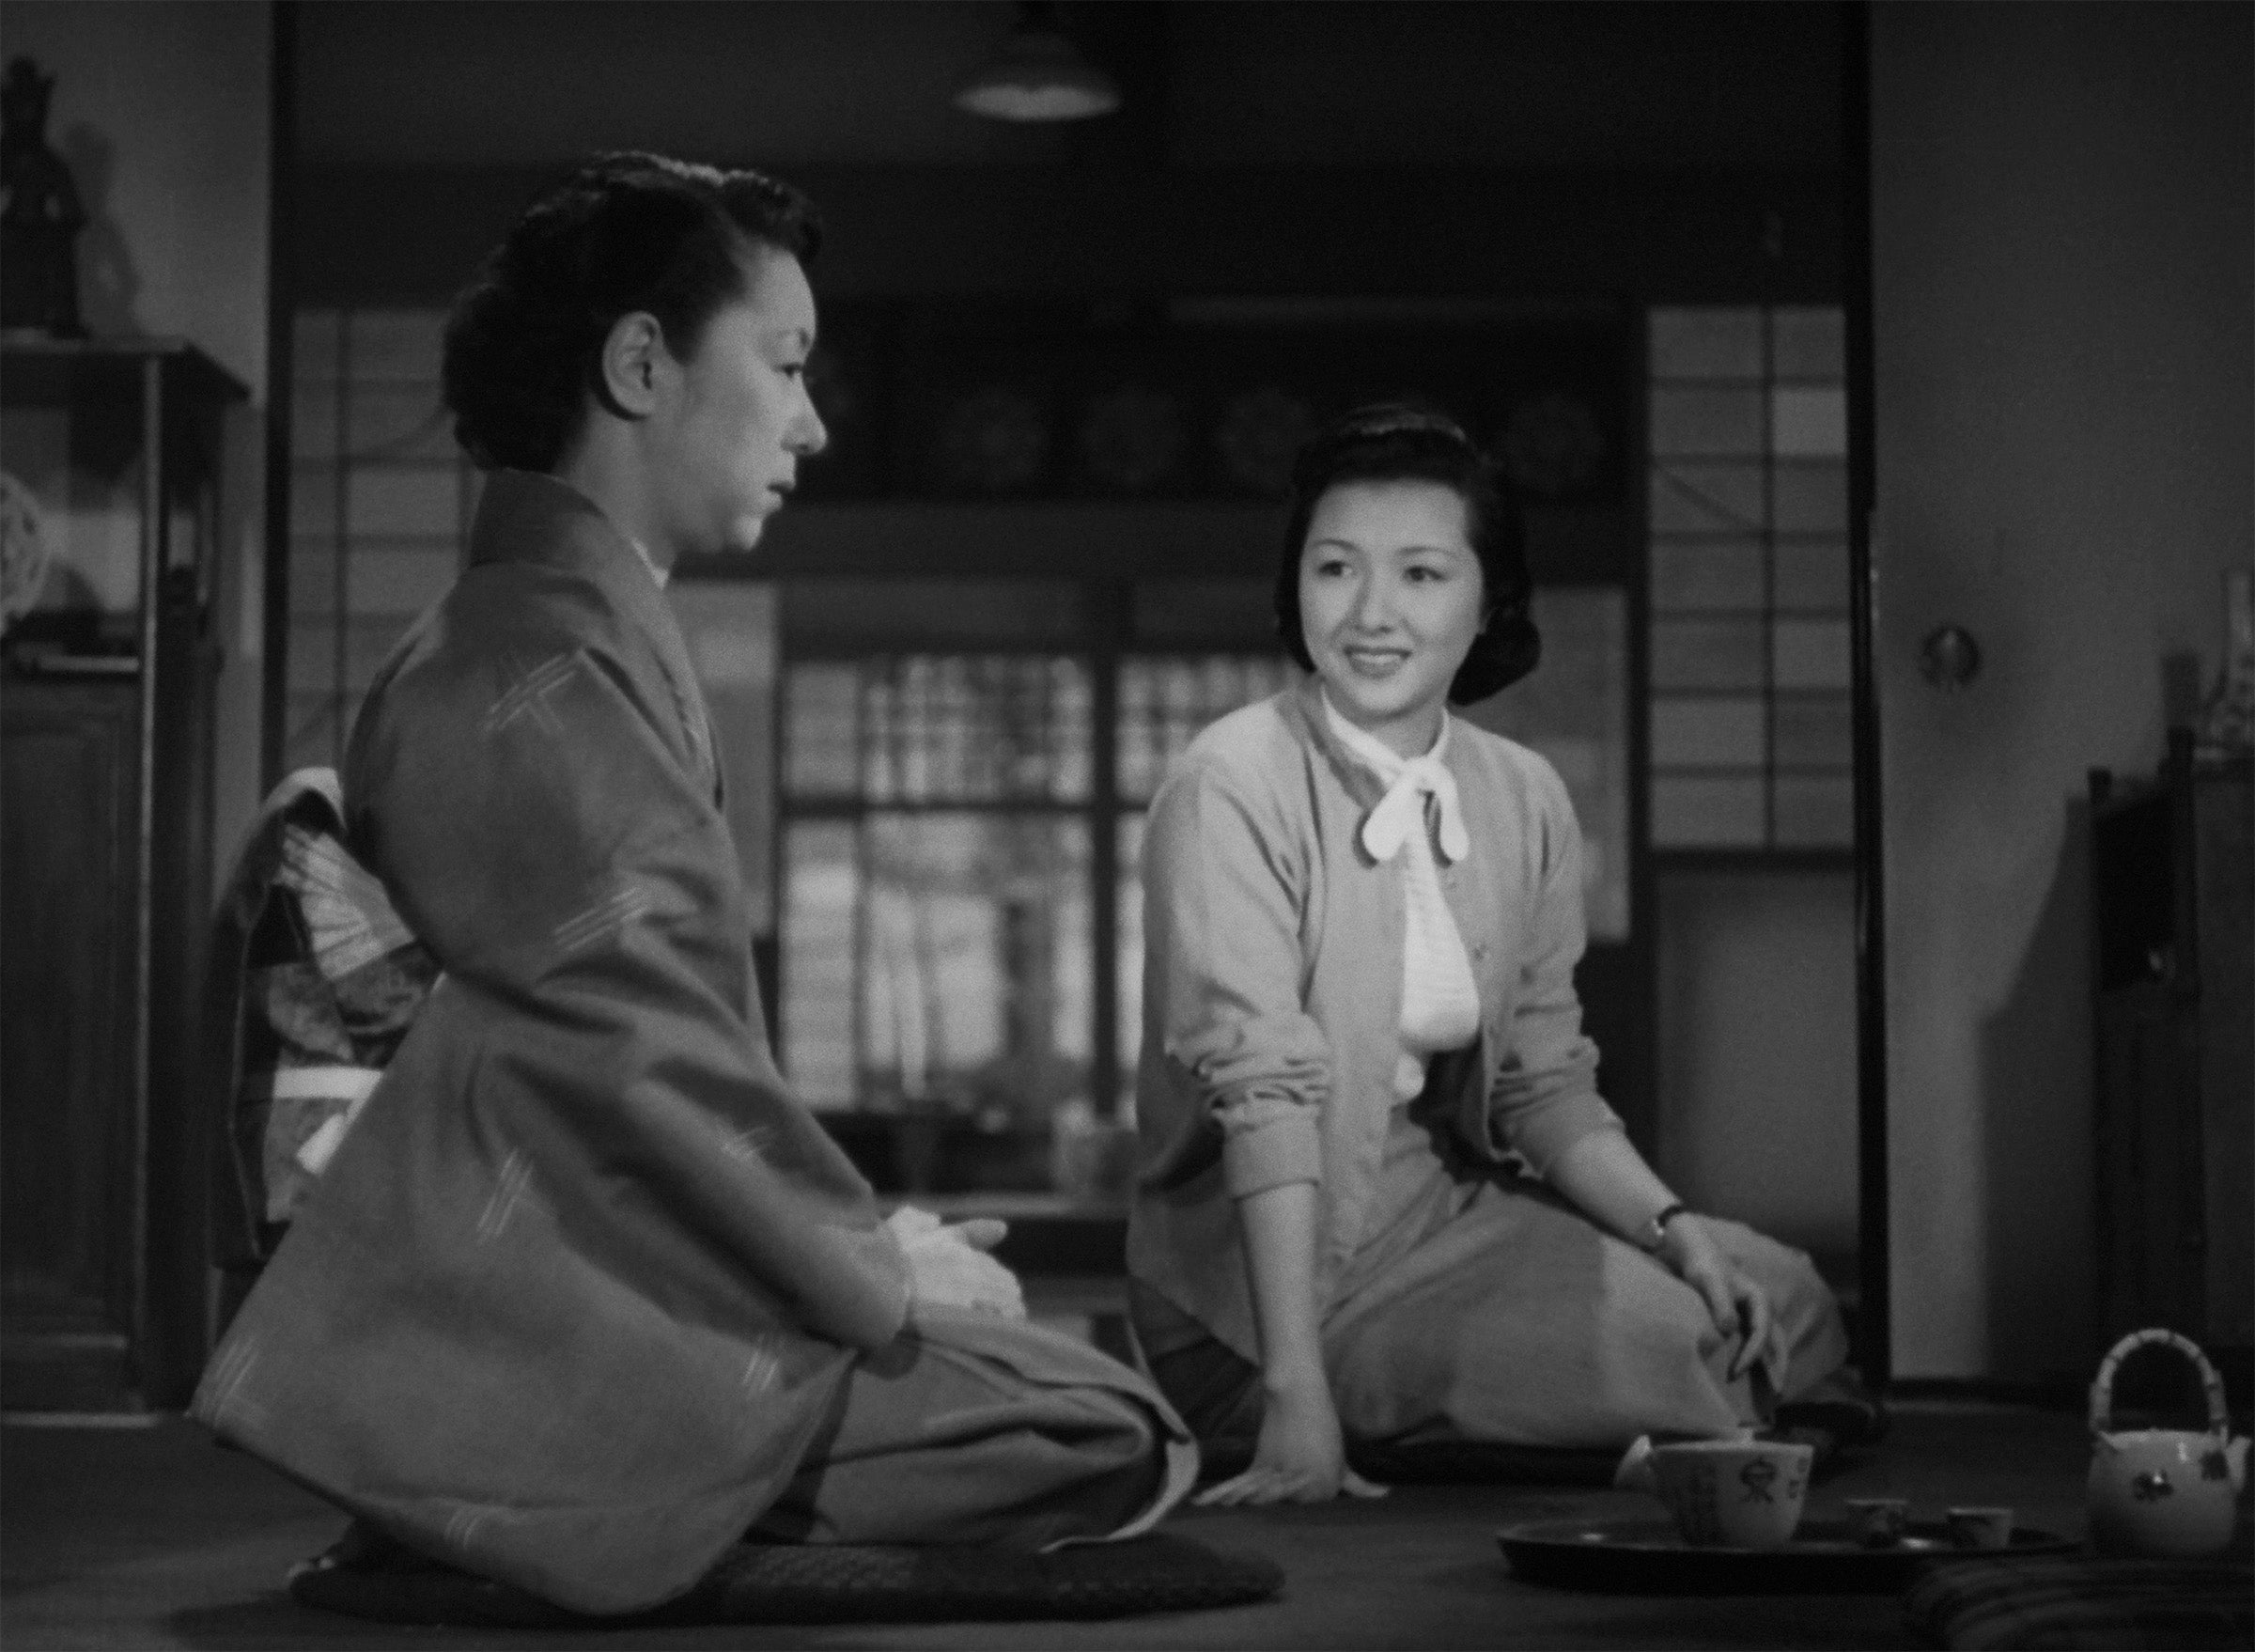 Coffret Ozu 6 films rares ou inédits